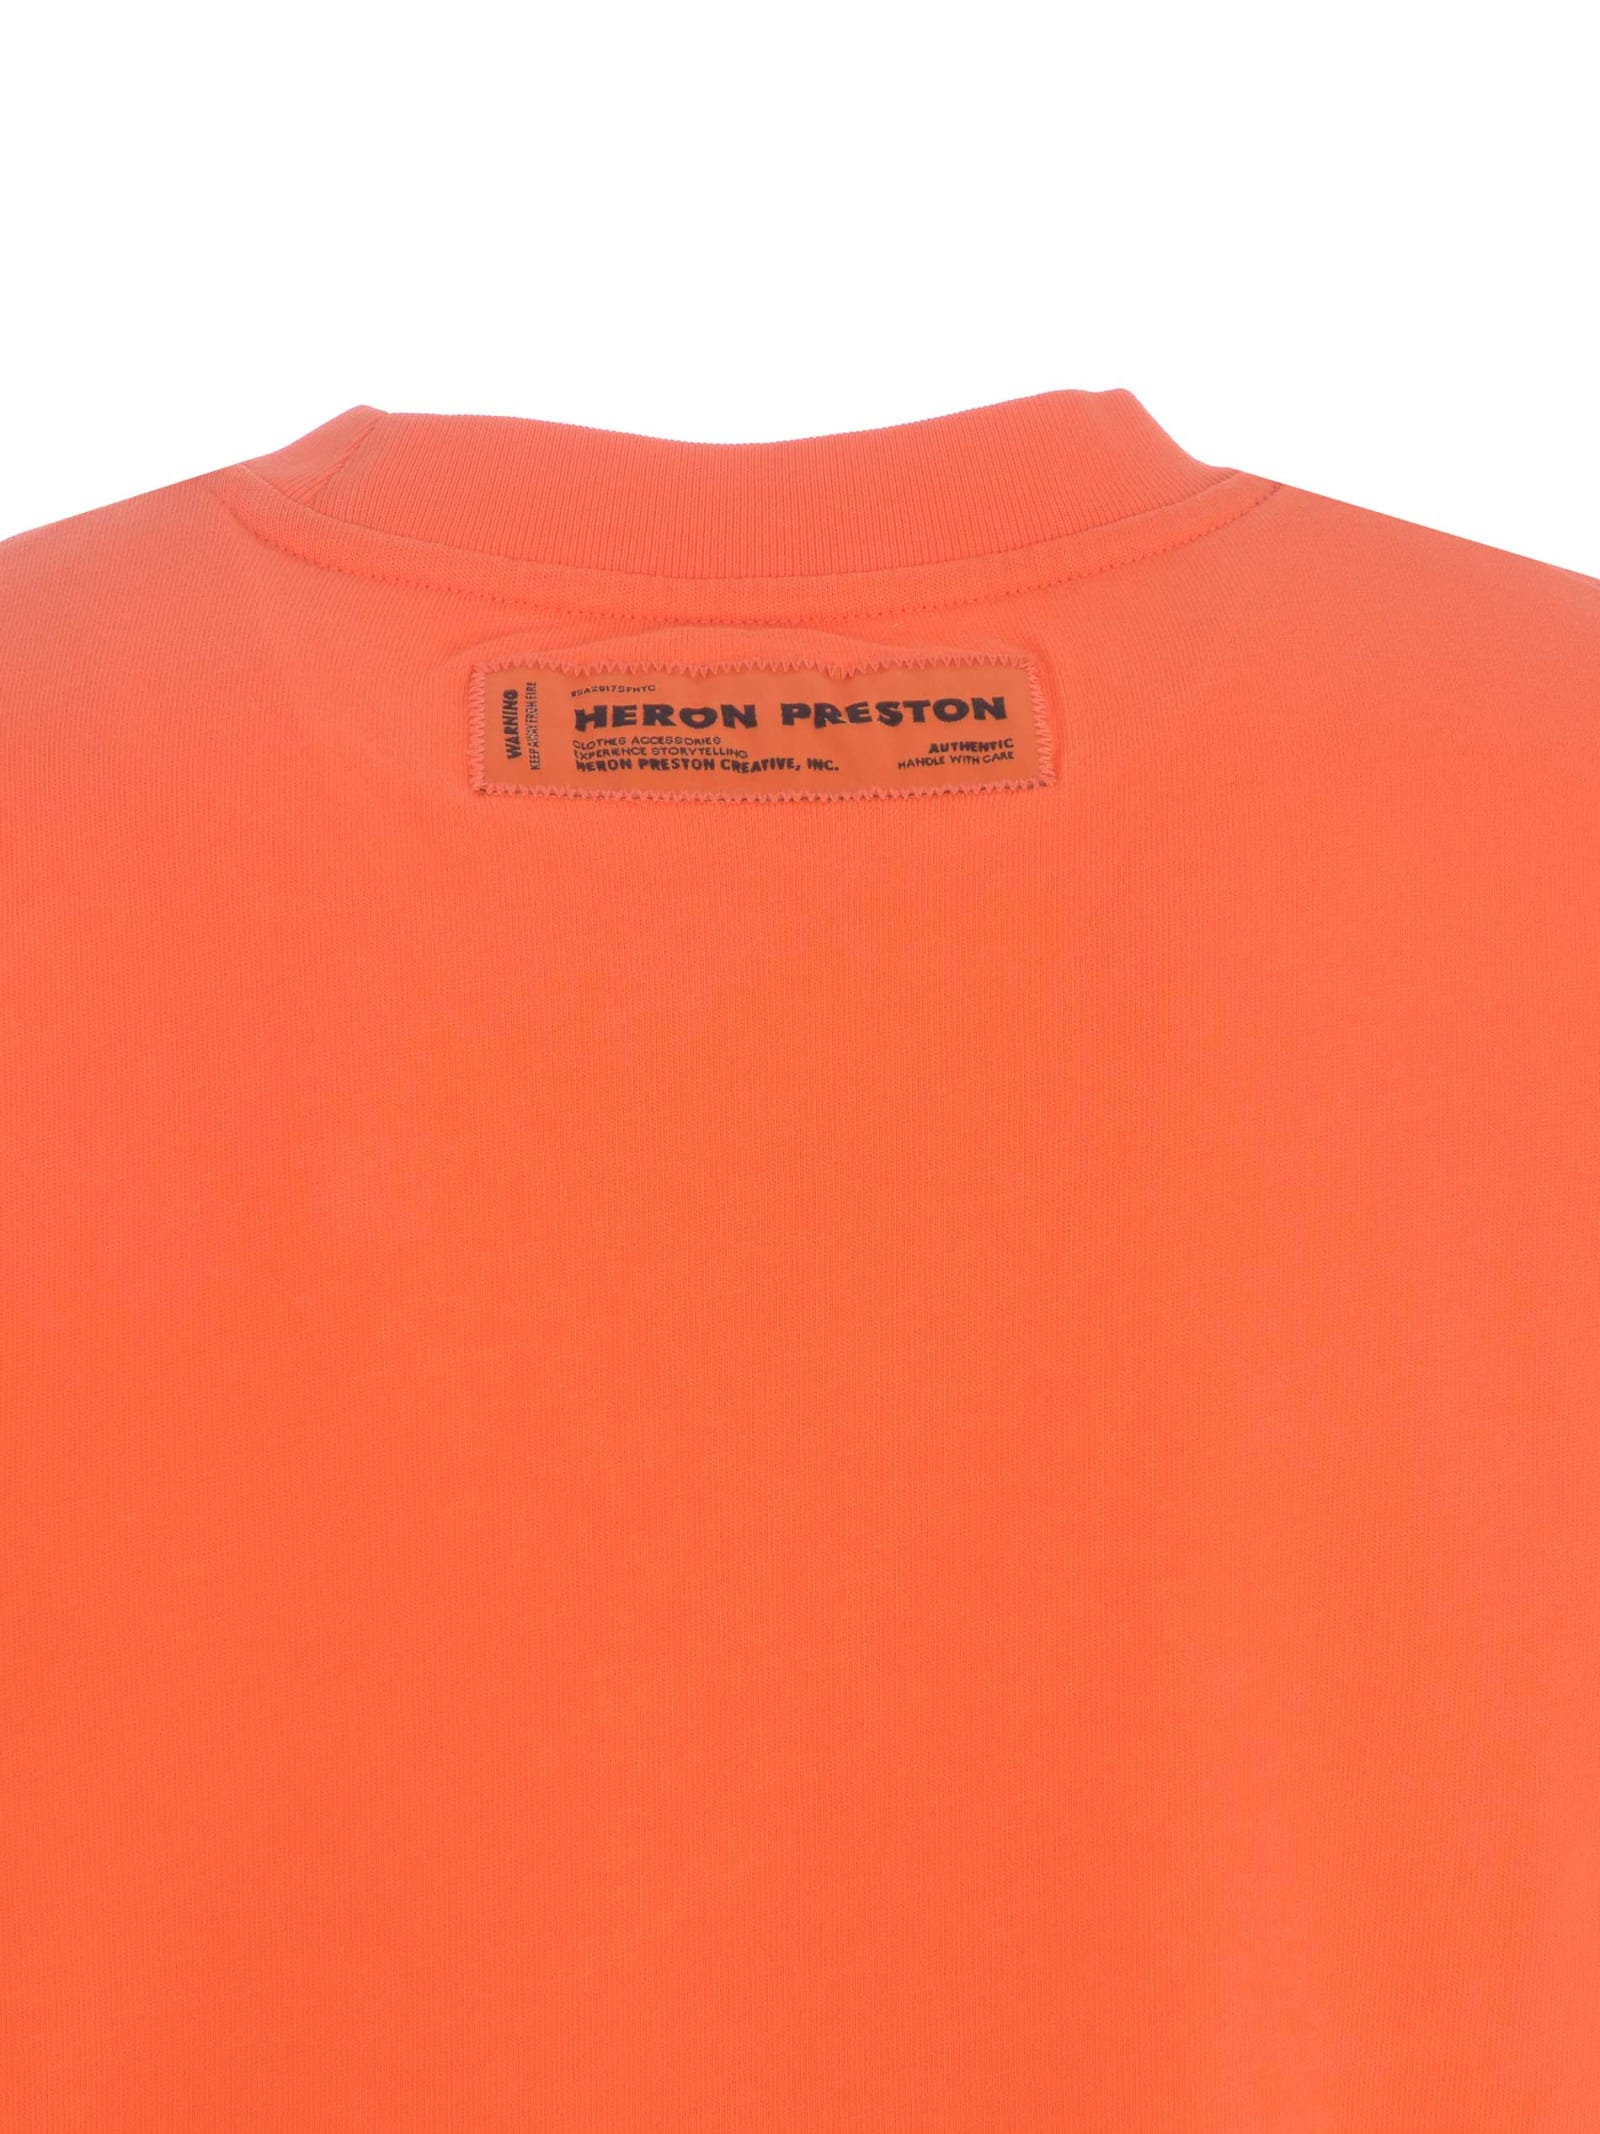 Shop Heron Preston T-shirt  Hpny In Cotton In Arancione